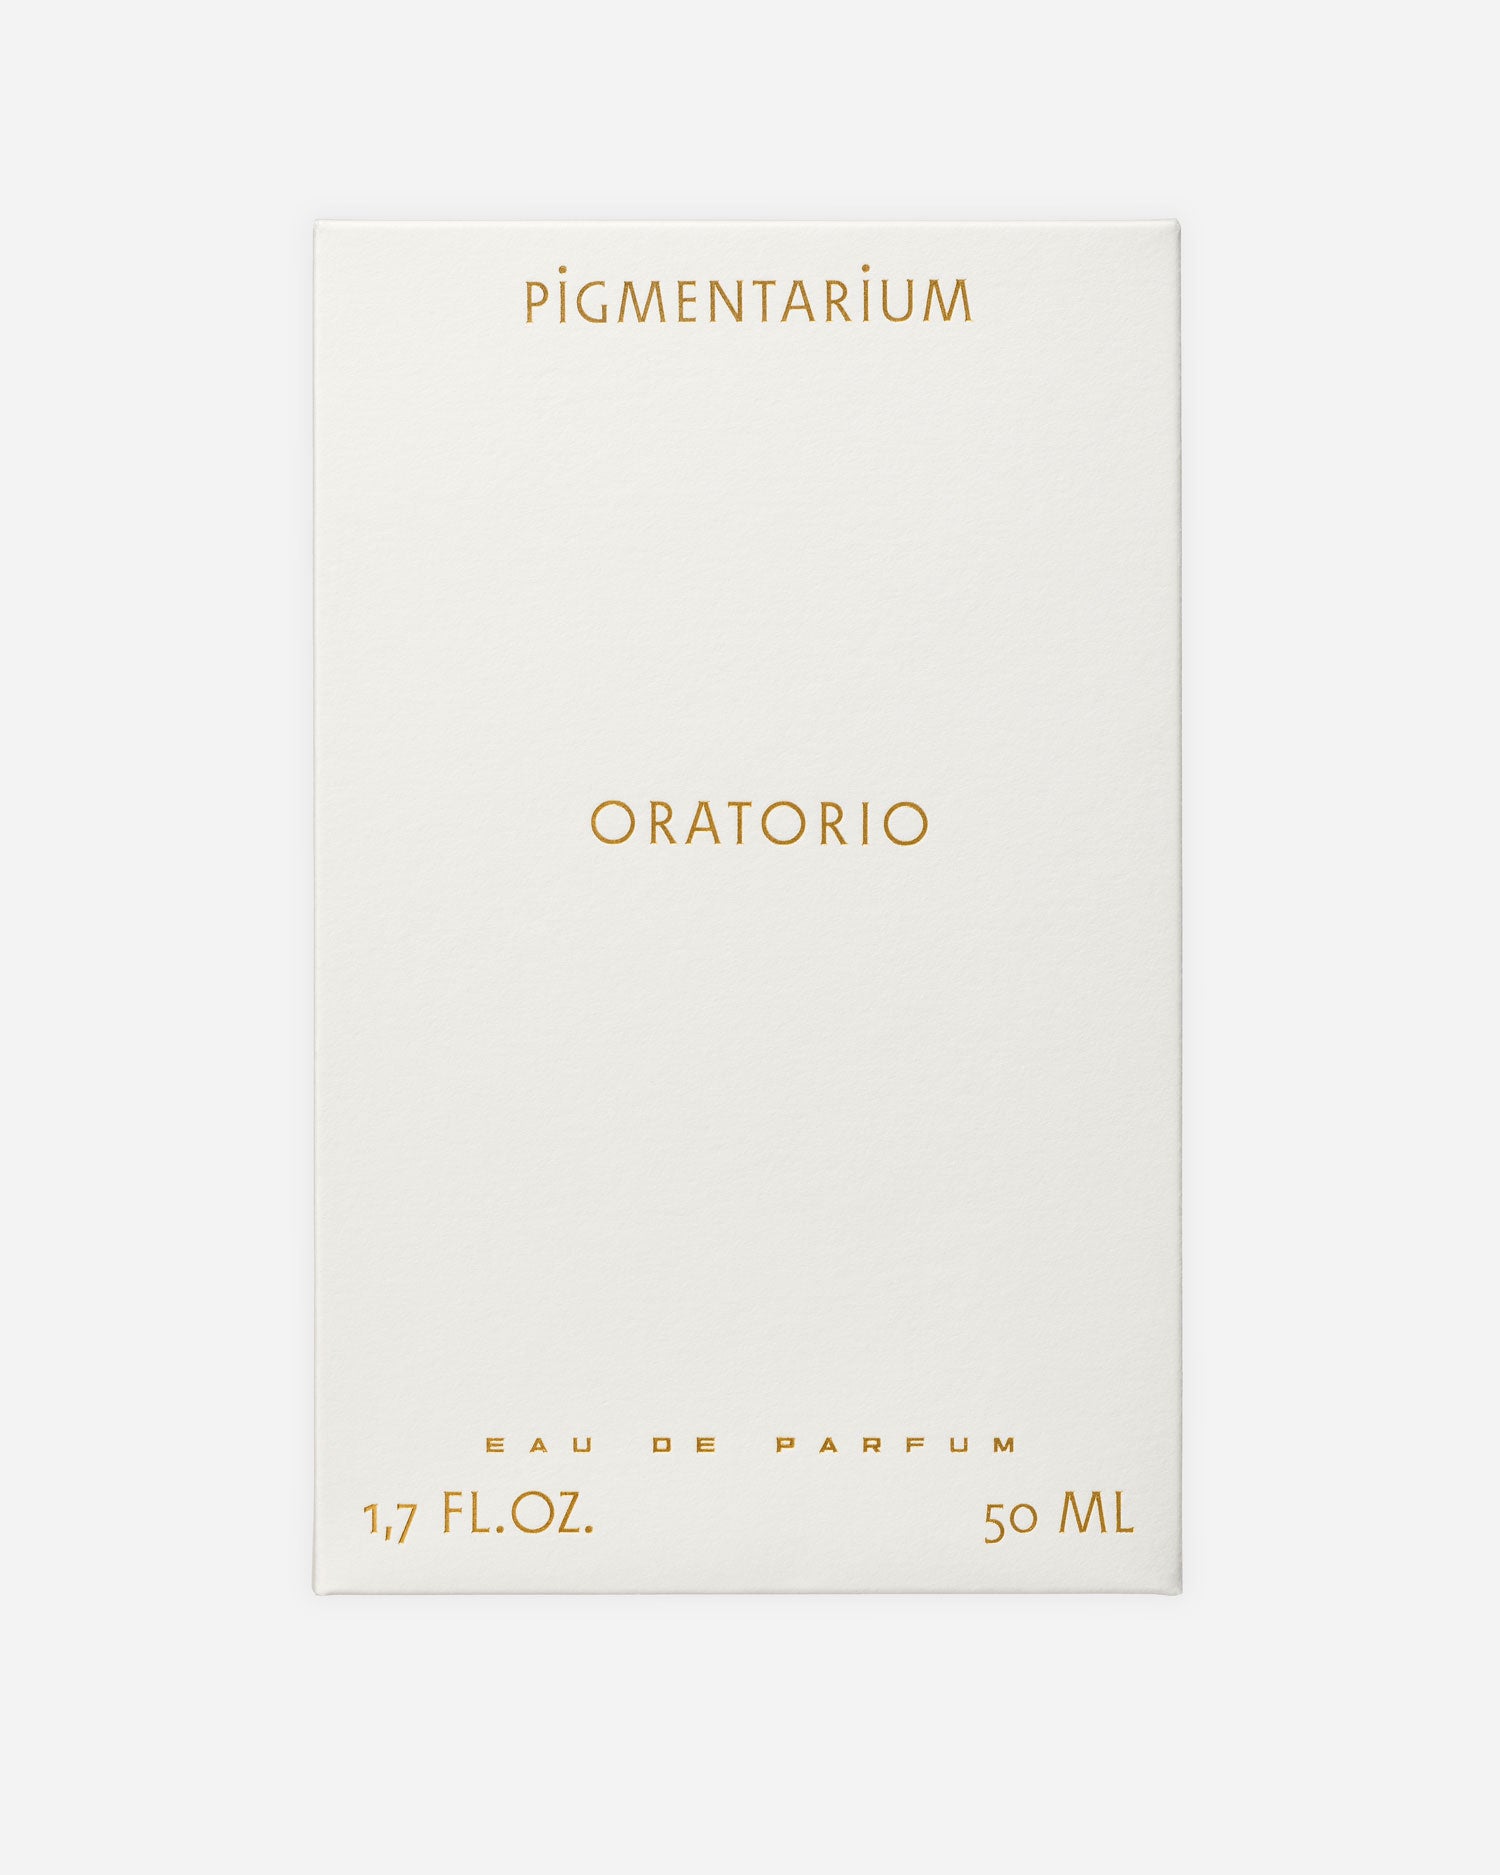 Oratorio - Fragrance - Pigmentarium - Elevastor